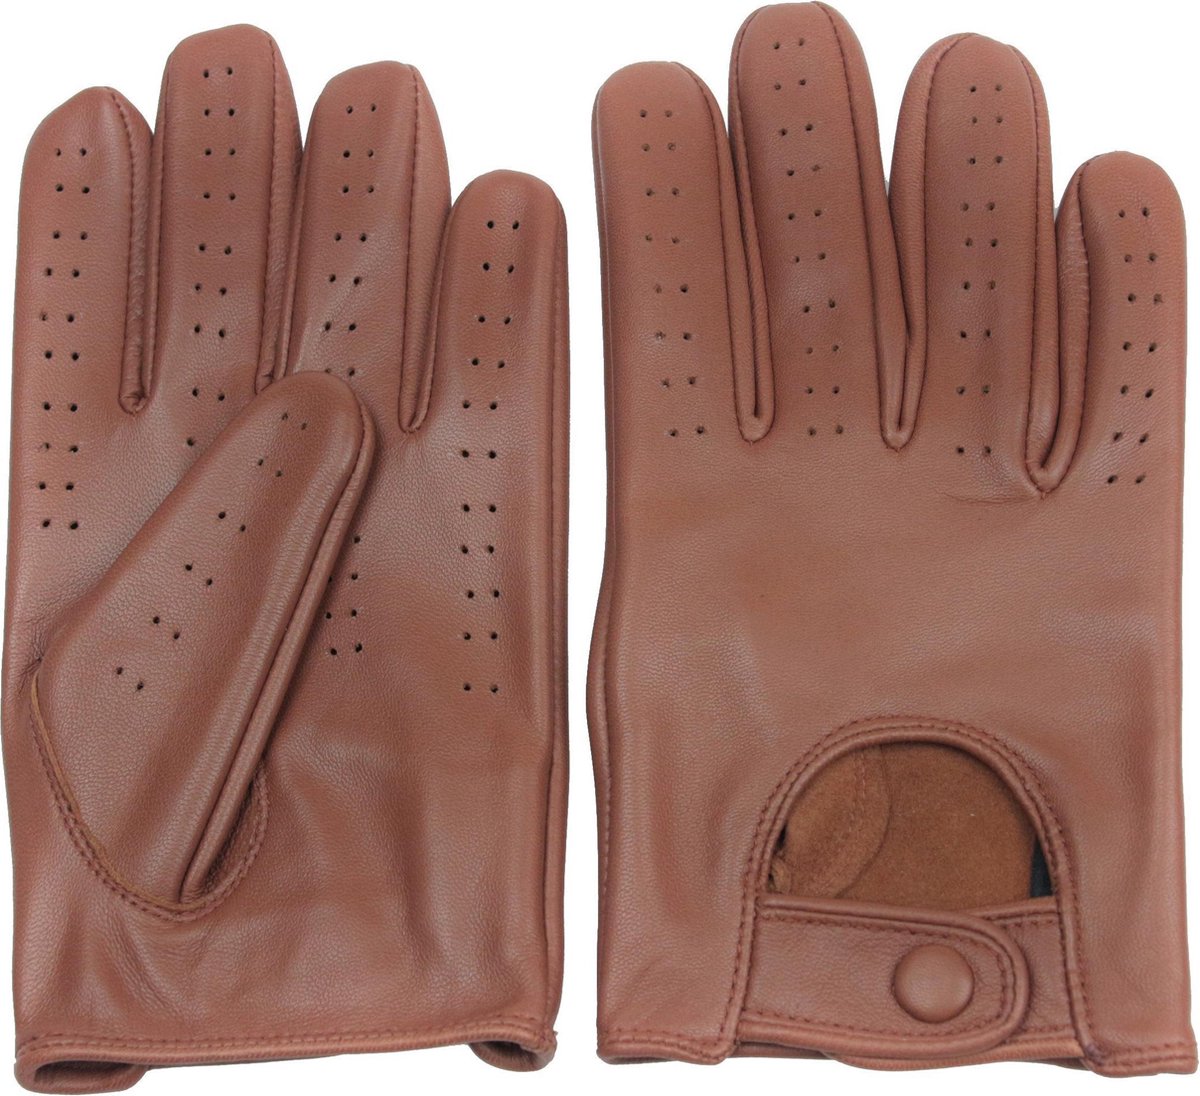 DriveLux™ Retro Racing - Leren Handschoenen Heren - Nappa Bruin - Leren Auto/Motor Handschoenen - Driving Gloves - Maat M (: 18,5 - 20,5 cm) - Ademend en Waterbestendig – Gemaakt van Lamsleer